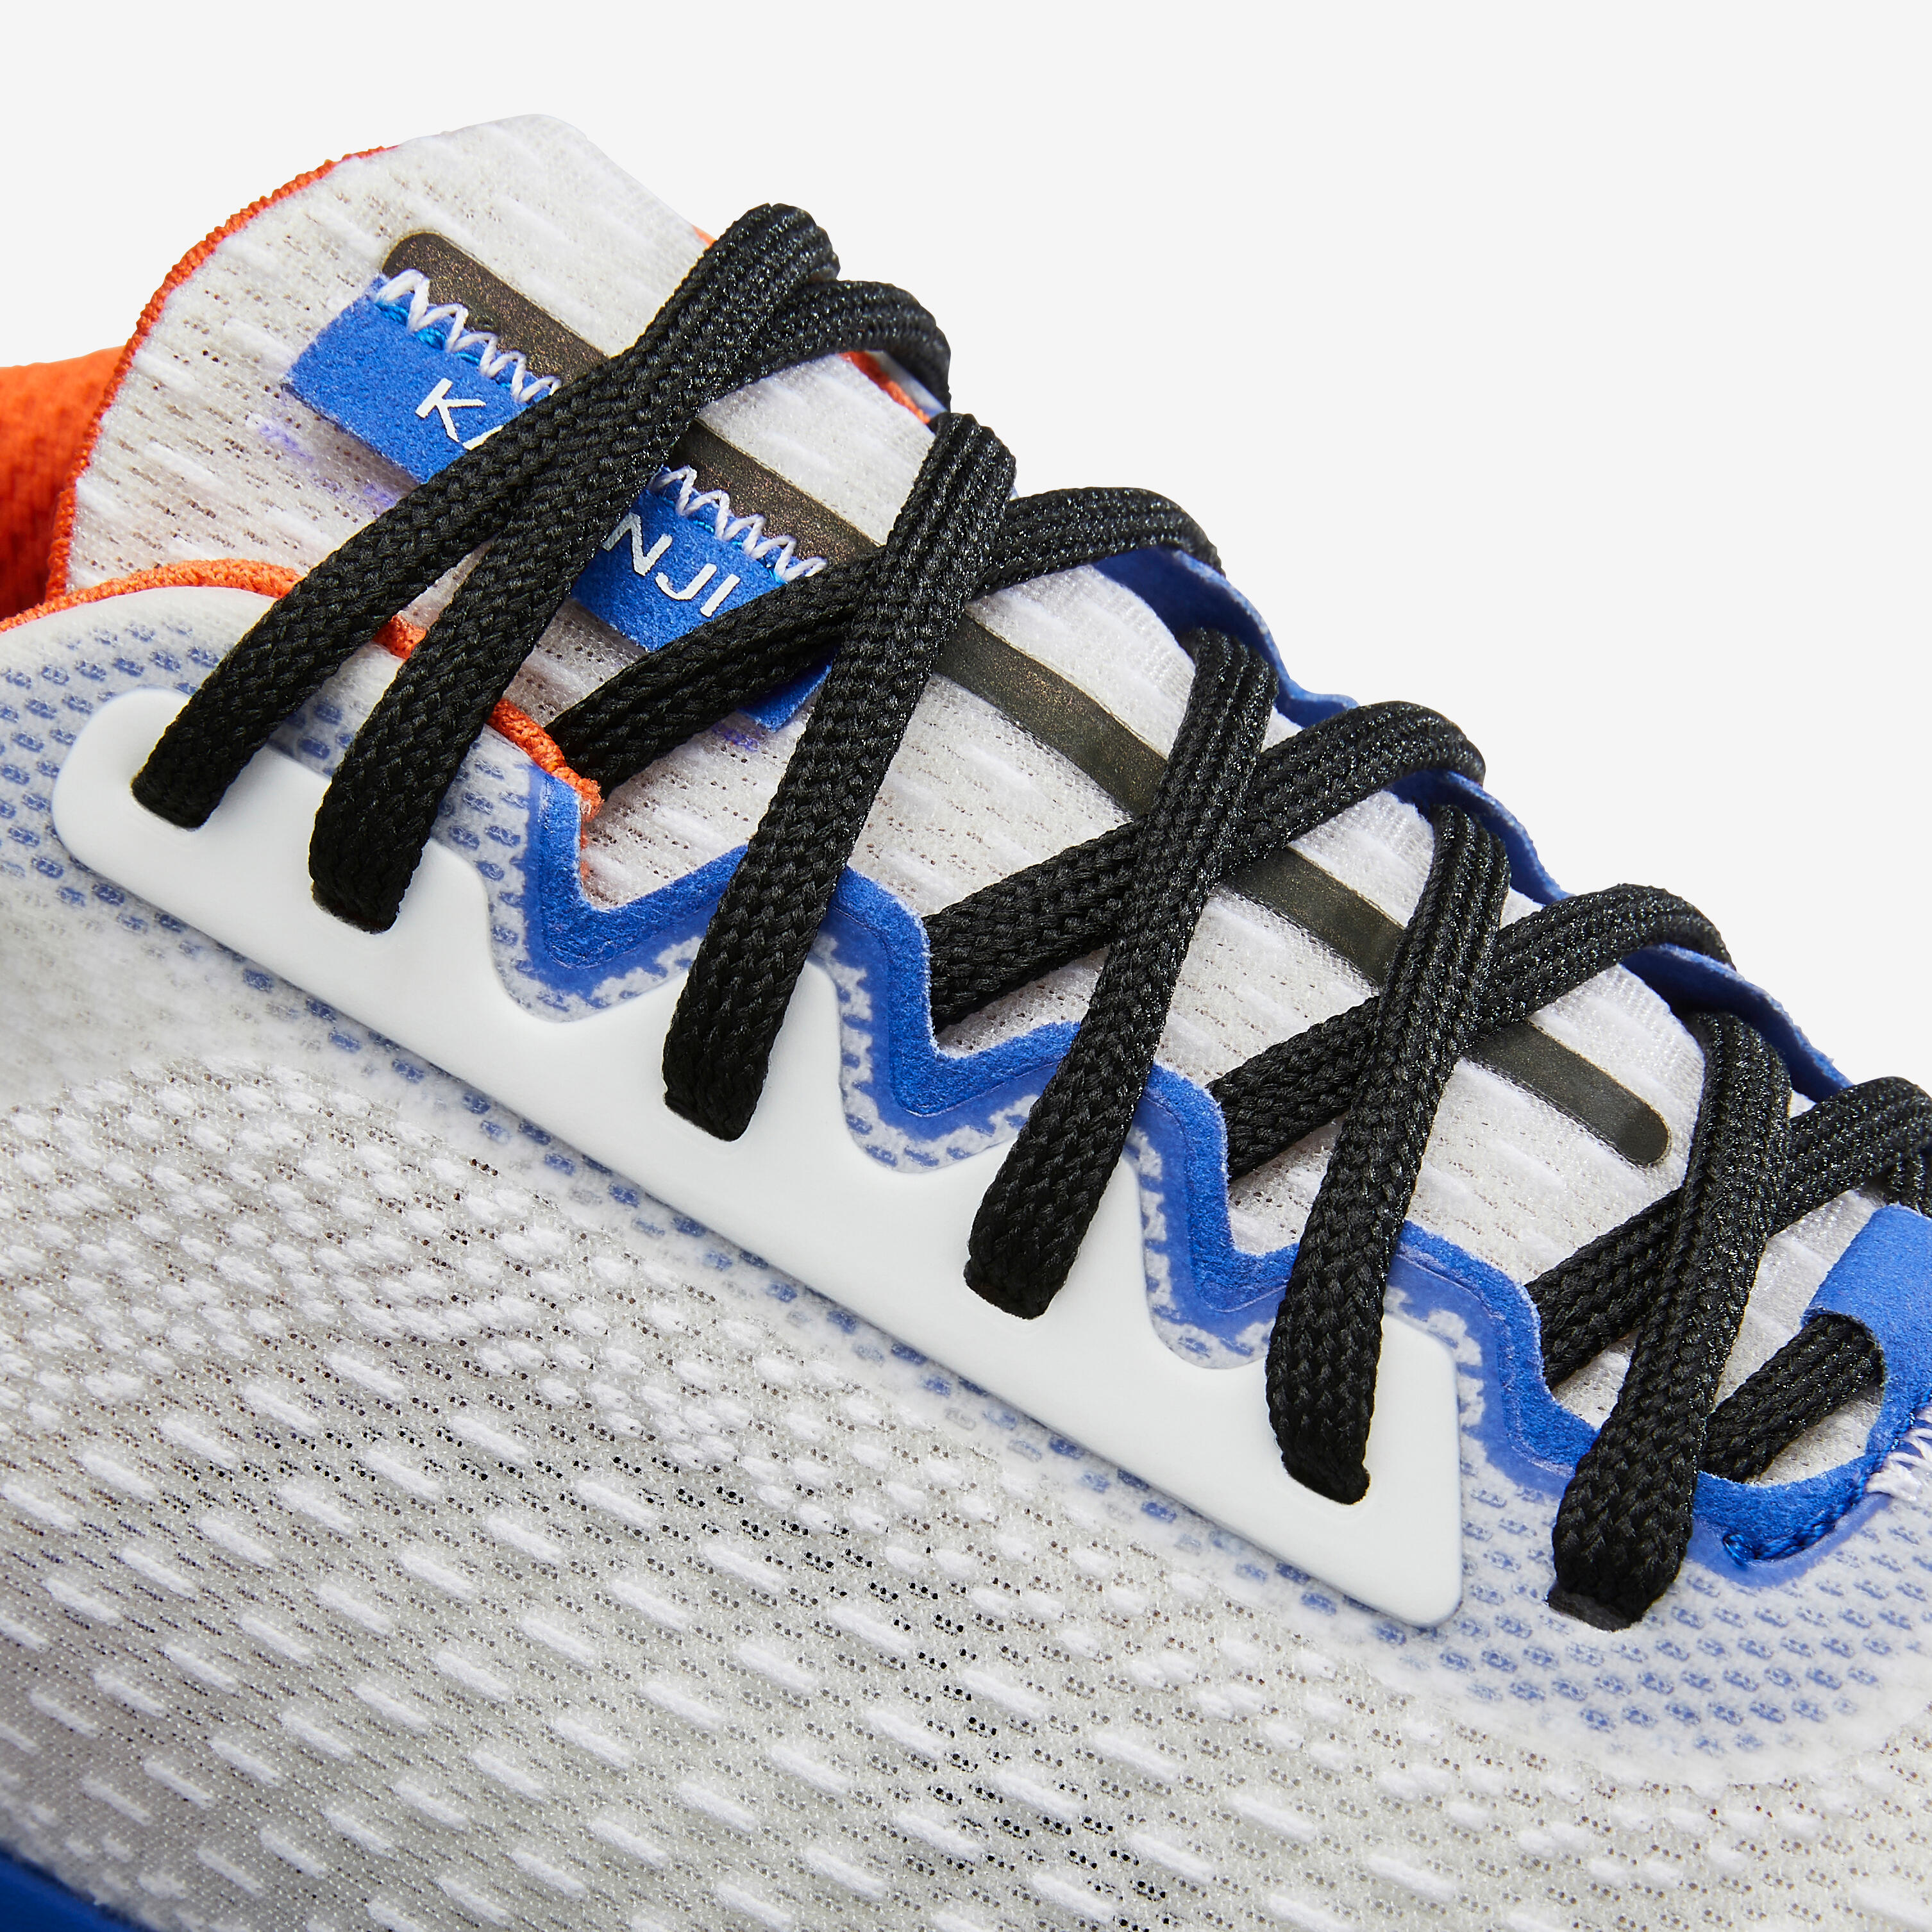 Chaussures de course homme - Jogflow 500.1 blanc/bleu - KALENJI